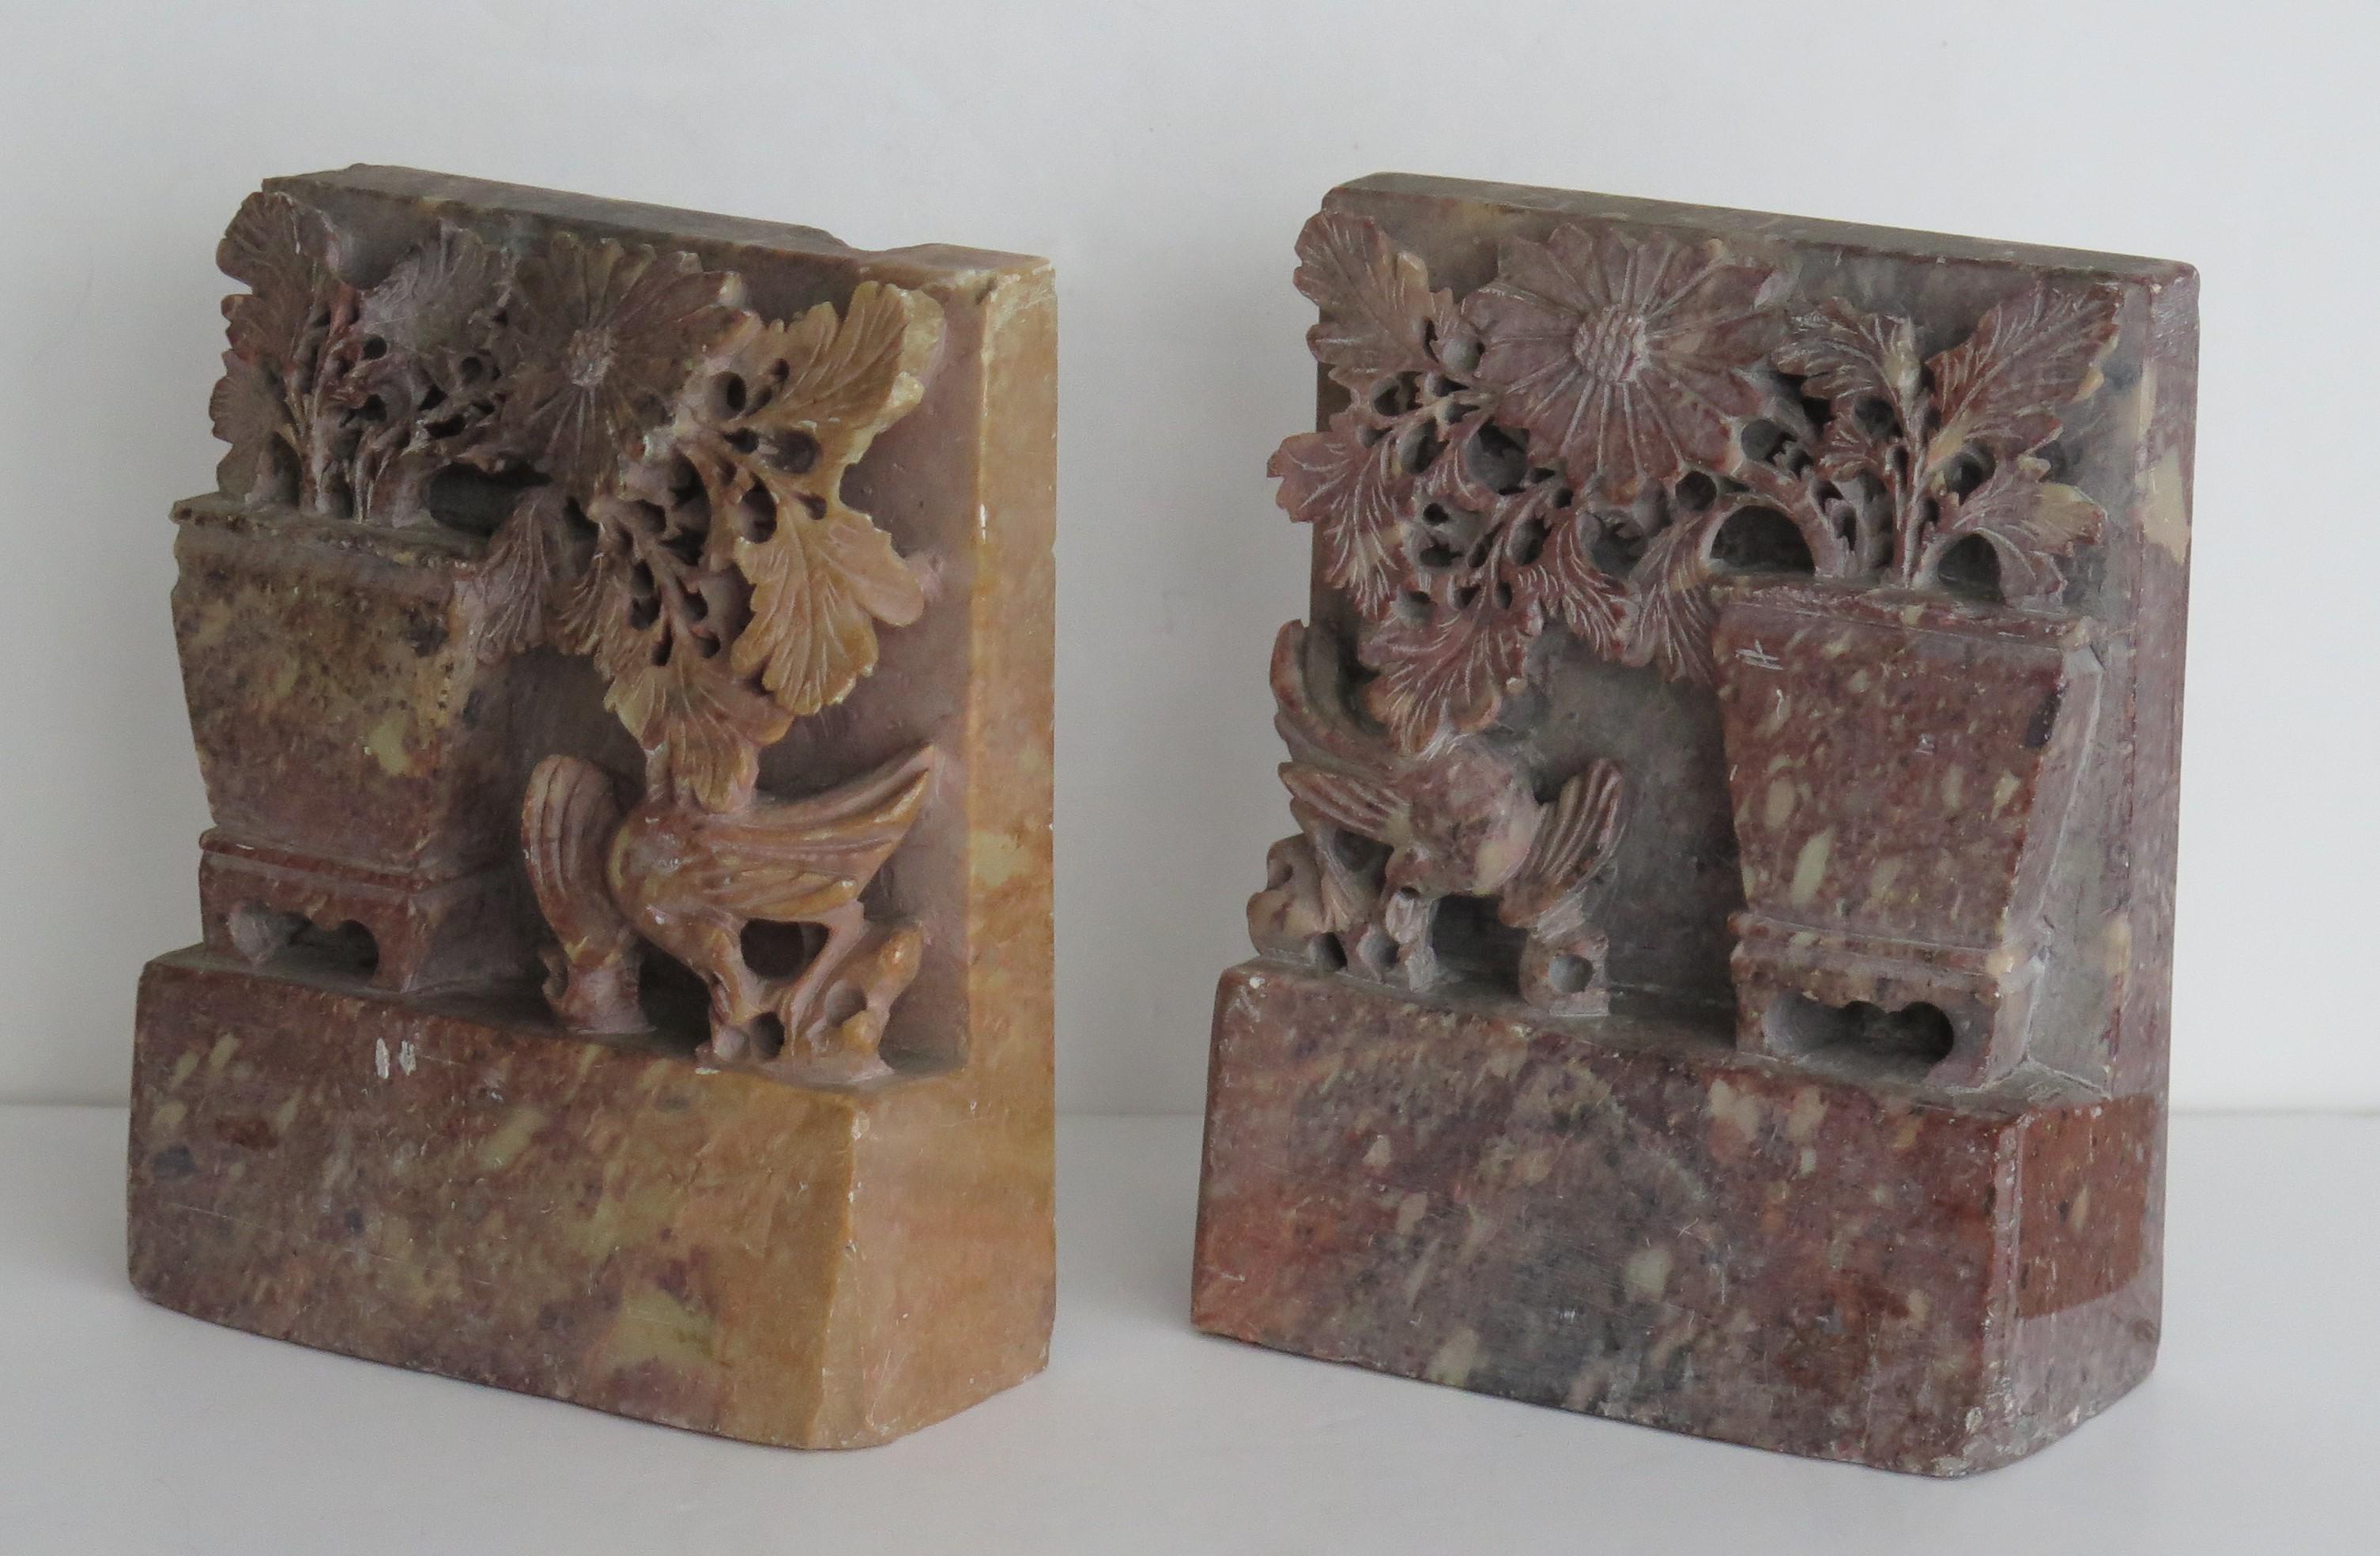 Dies ist ein schönes Paar von chinesischen Speckstein Buchstützen in China während der Zeit der Republik gemacht, CIRCA 1920.

Diese Buchstützen sind einzeln gut von Hand aus dem massiven Stein geschnitzt und stellen eine große Vase mit blühenden